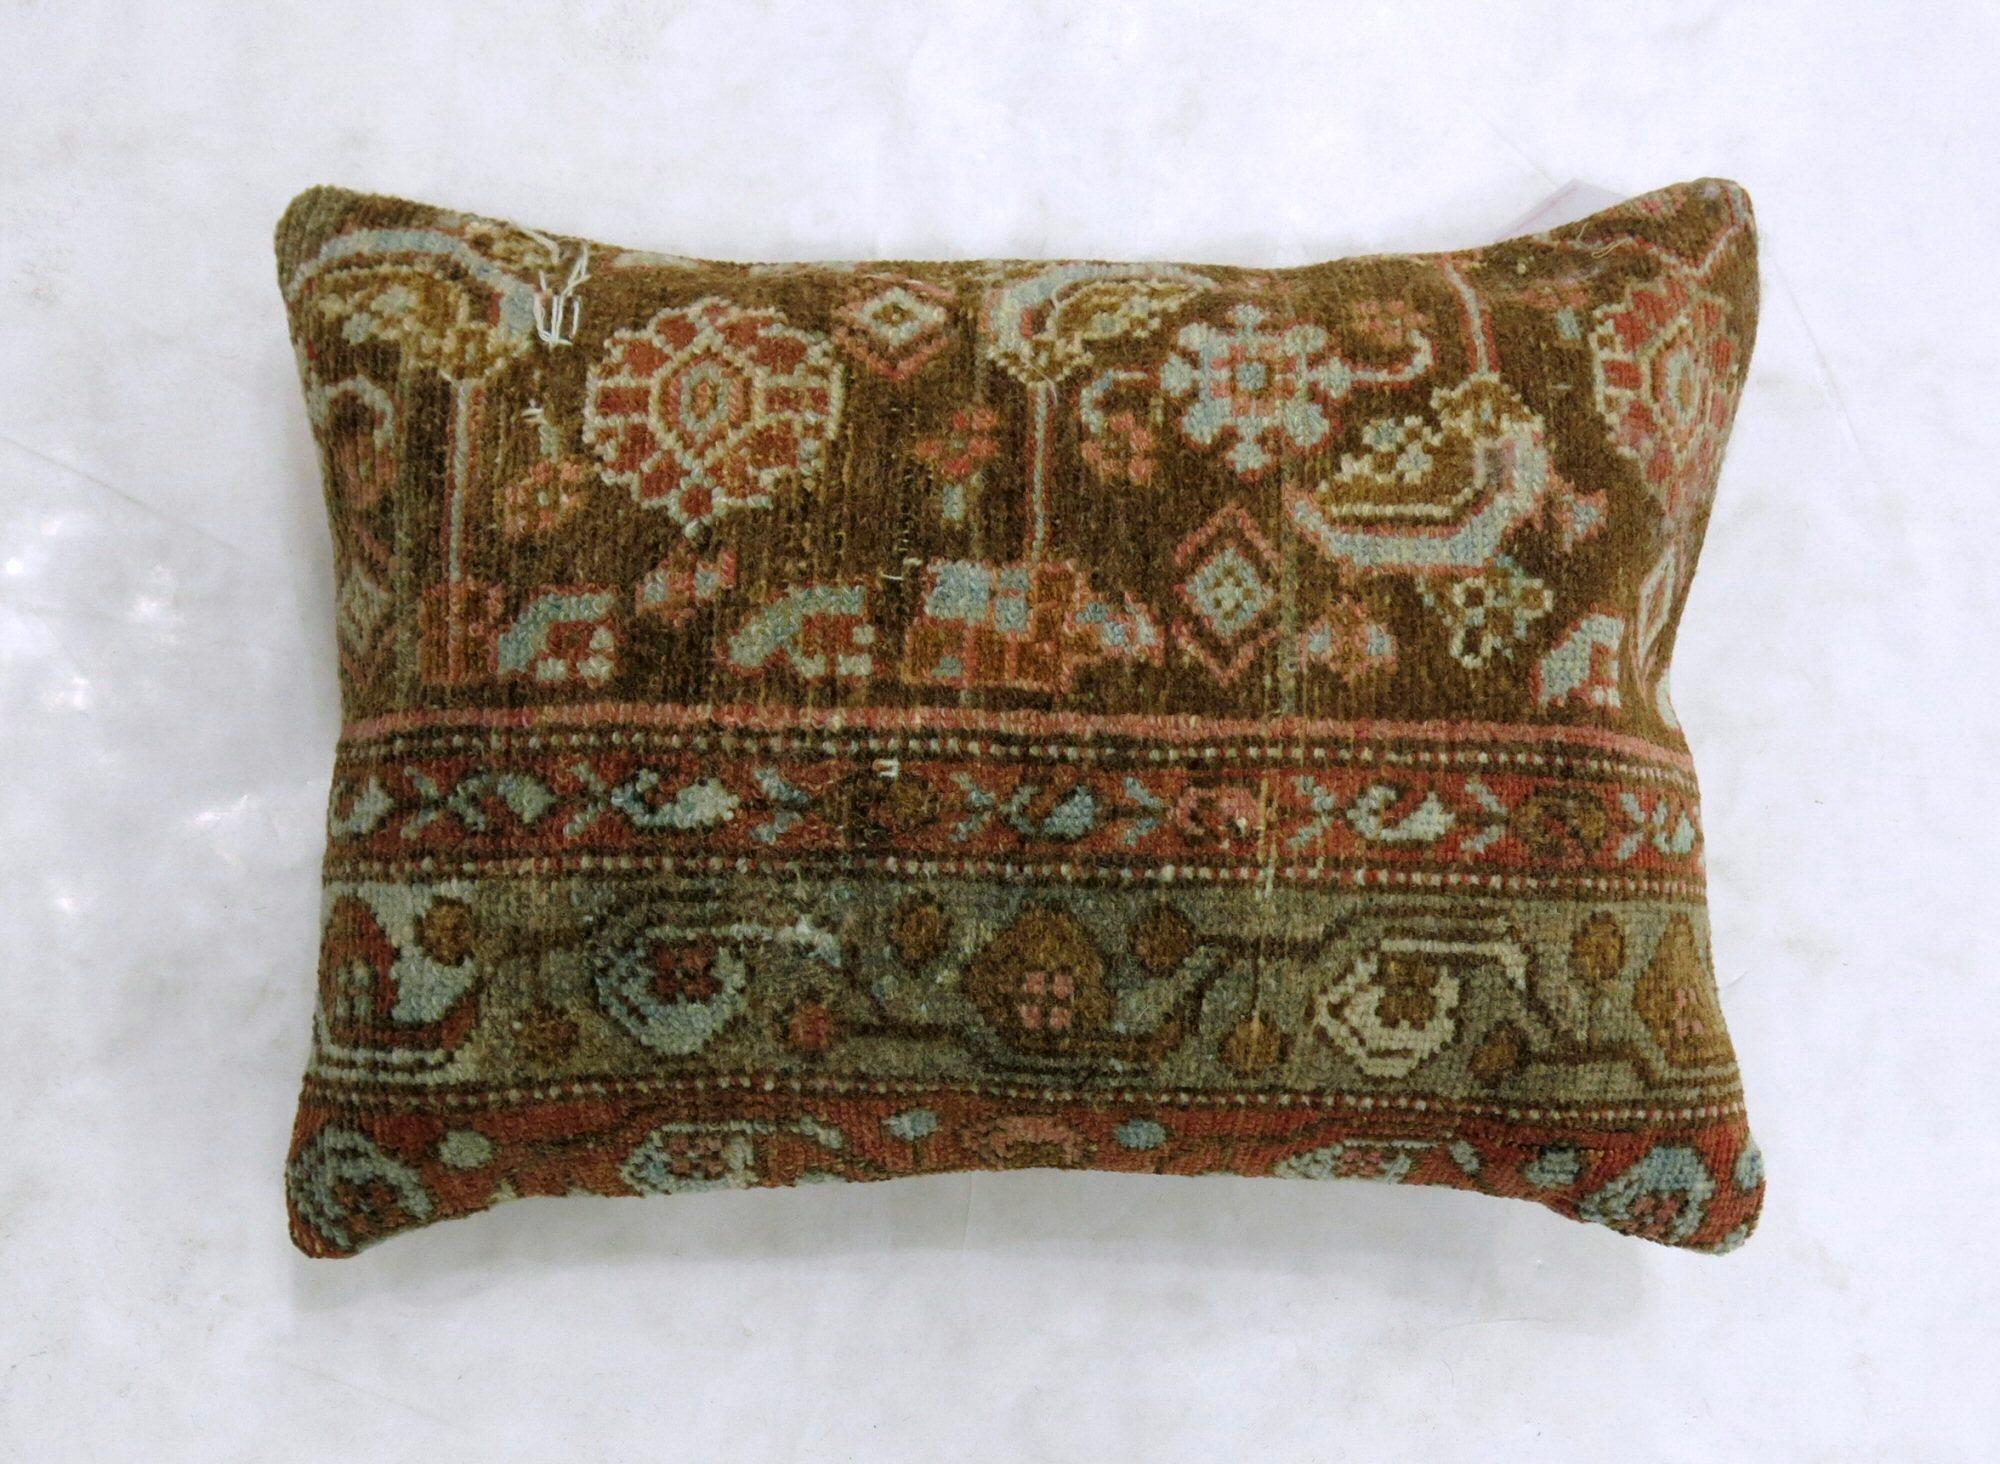 Kissen aus einem persischen Malayer-Teppich in Braun und Rost.

Maße: 16